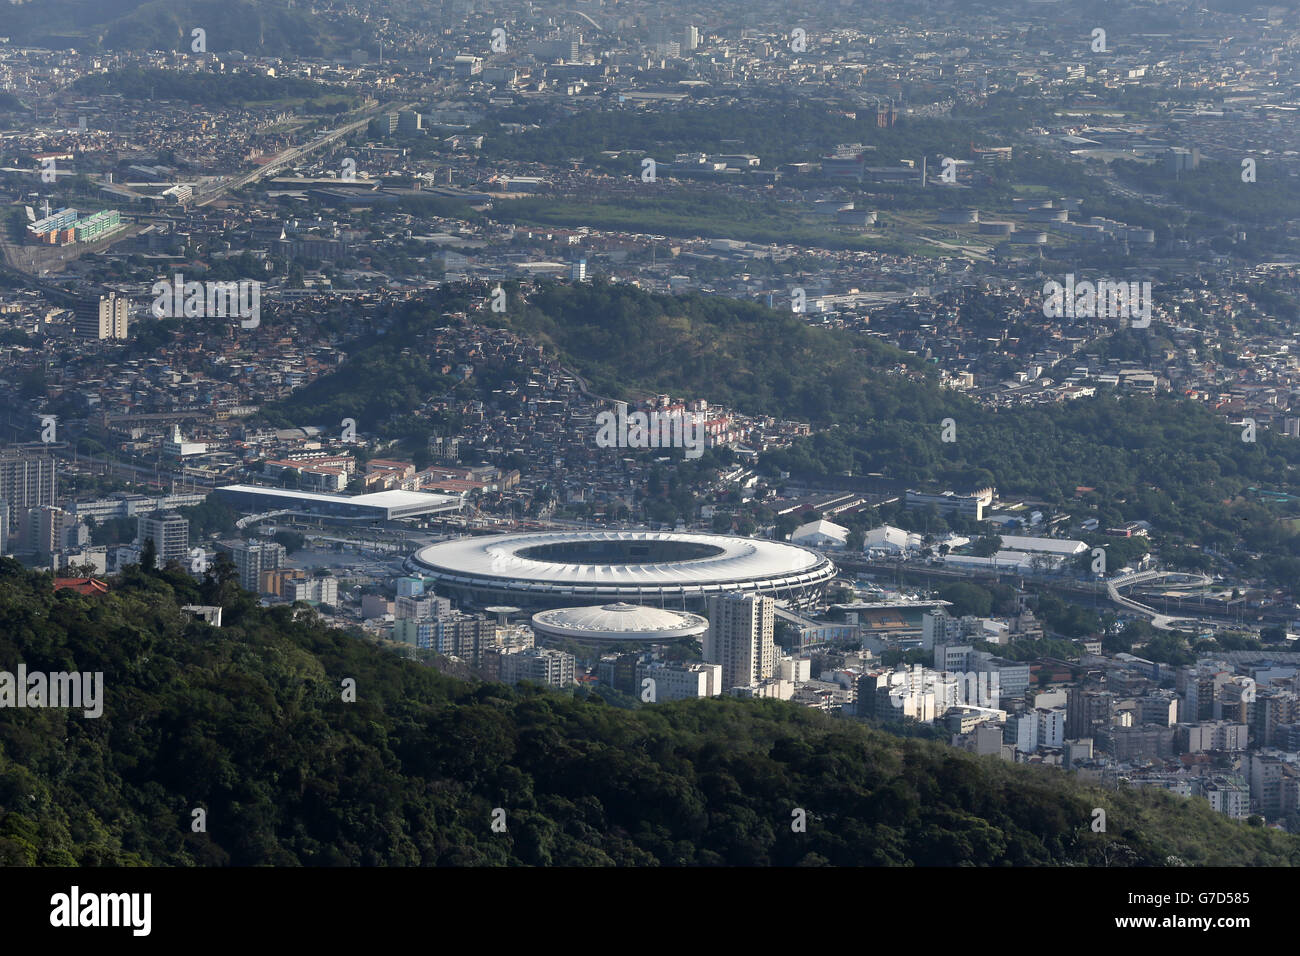 Soccer - FIFA World Cup 2014 - Rio de Janeiro City Views Stock Photo